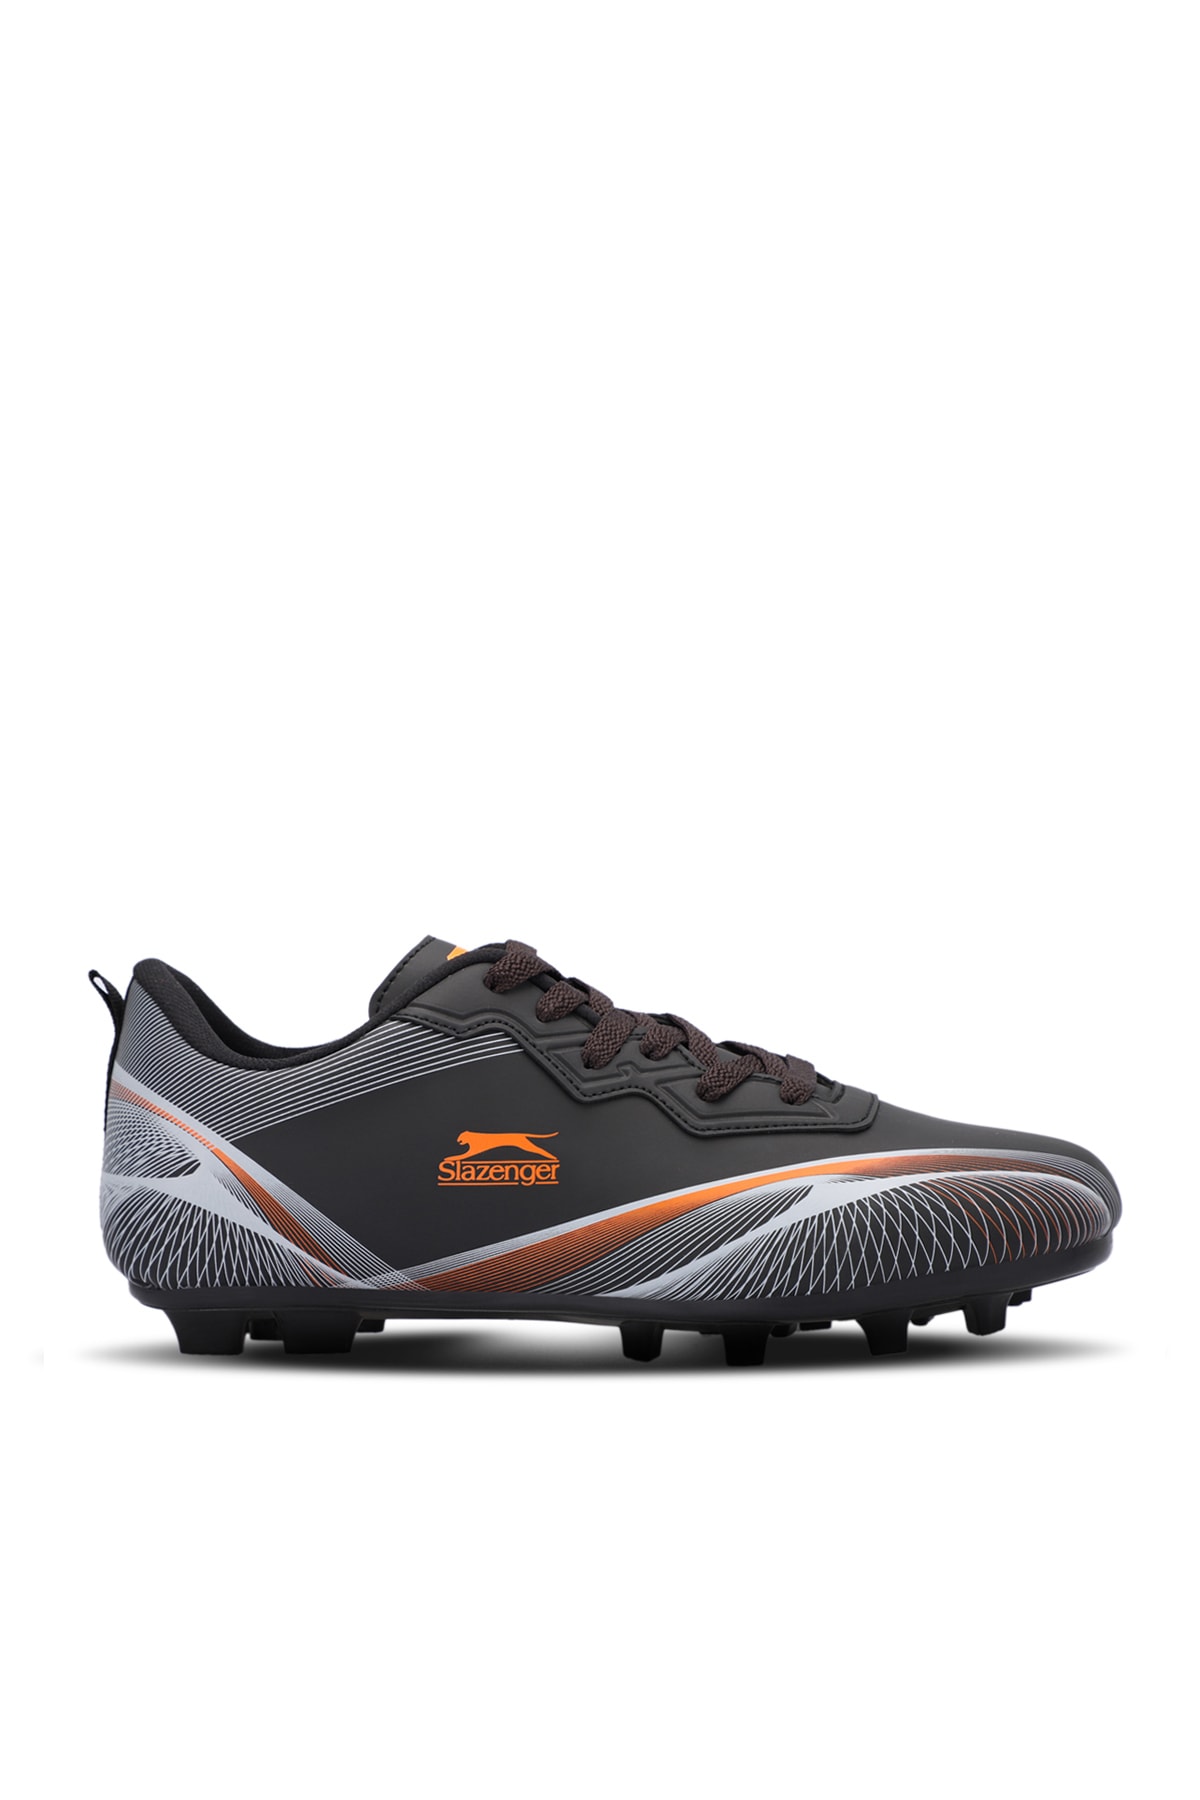 Slazenger Marcell Krp Boys Football Boots Black / Orange